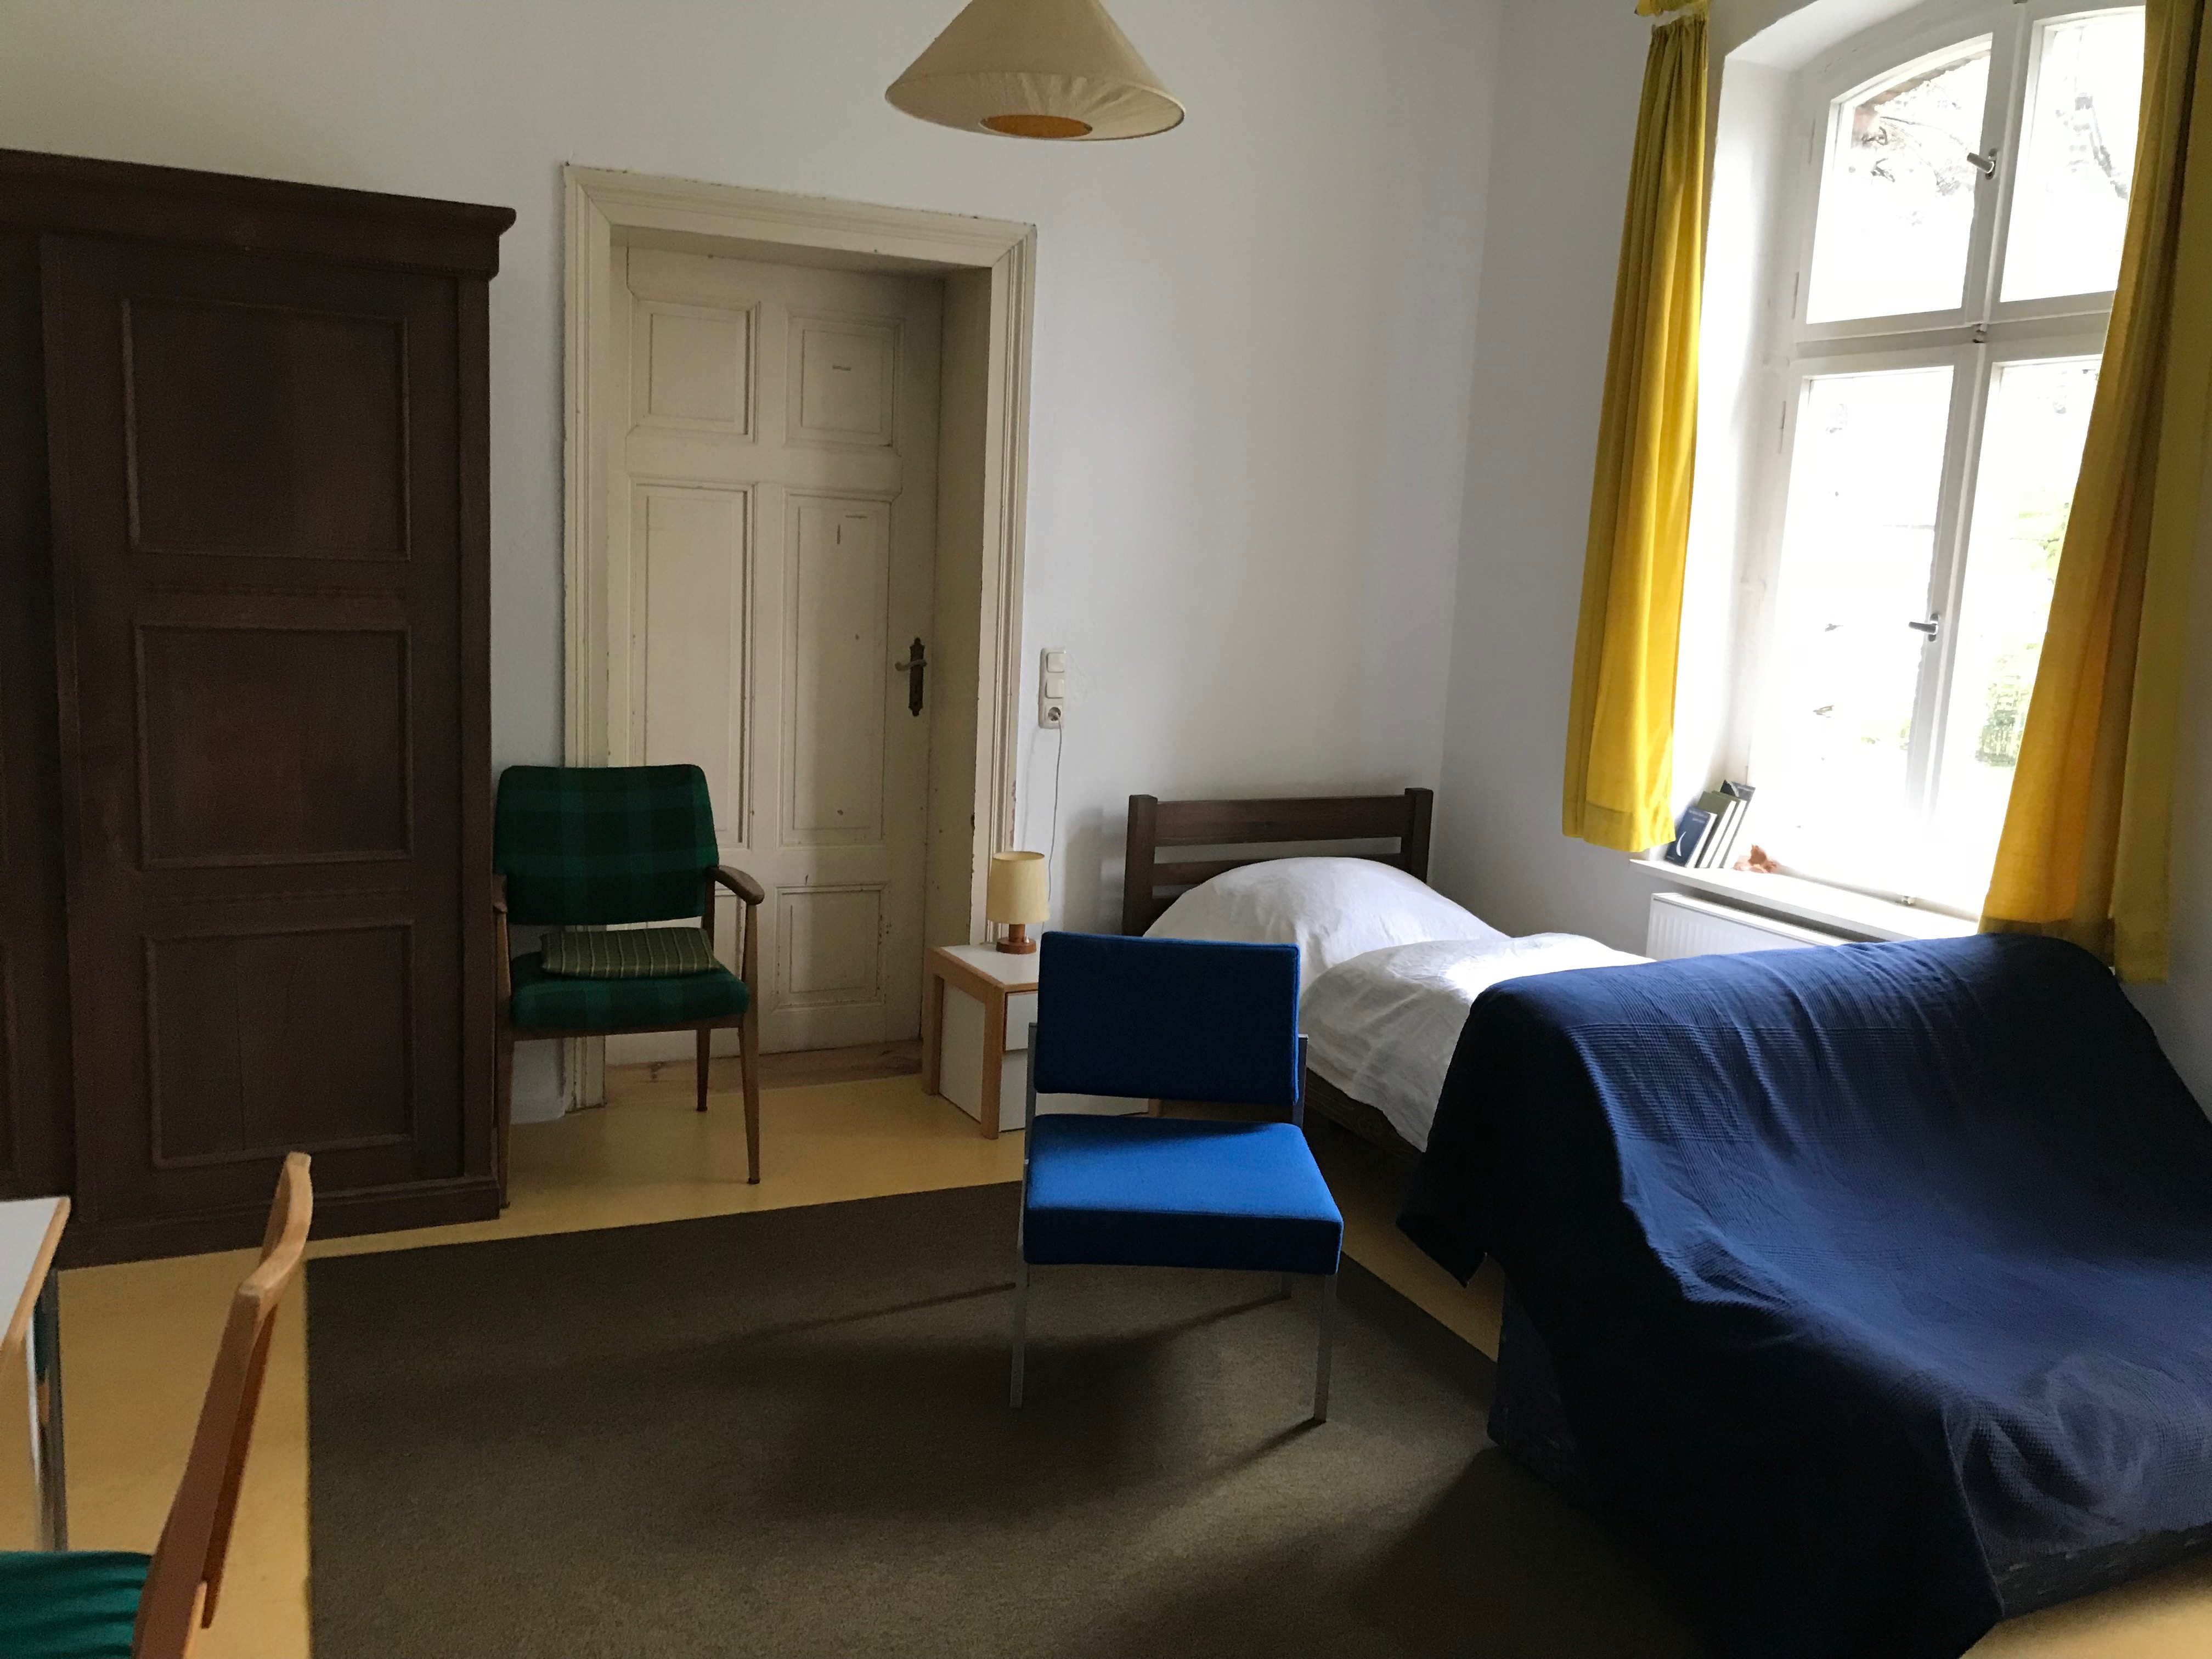 Zimmer Greifswald